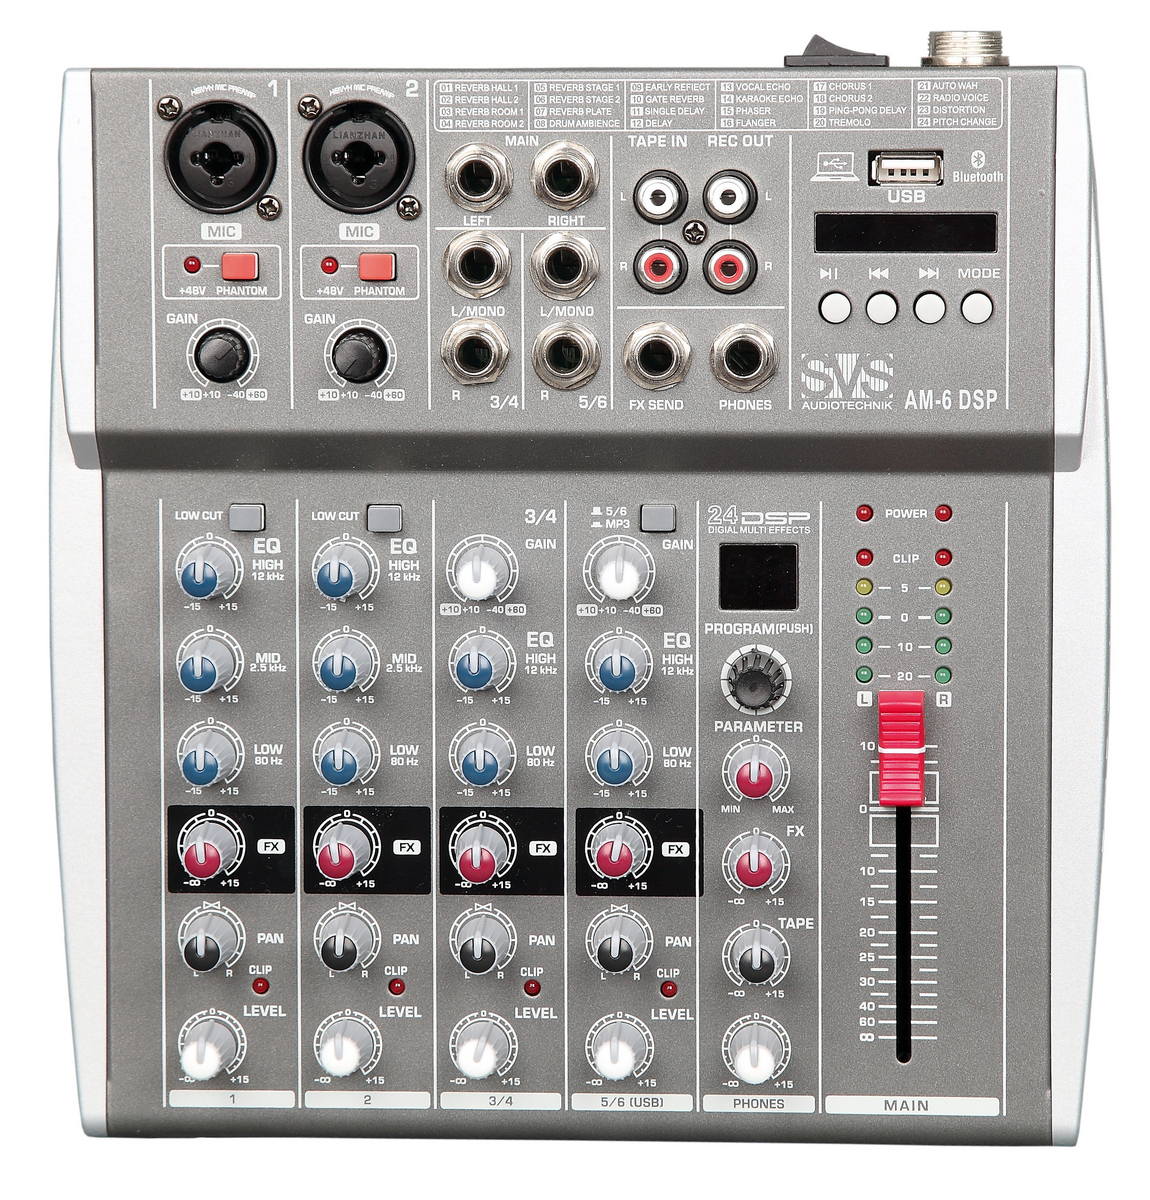 Микшерные пульты аналоговые SVS Audiotechnik mixers AM-6 DSP портативный 6 канальный аудиомикшер b6 usb микшерный пульт